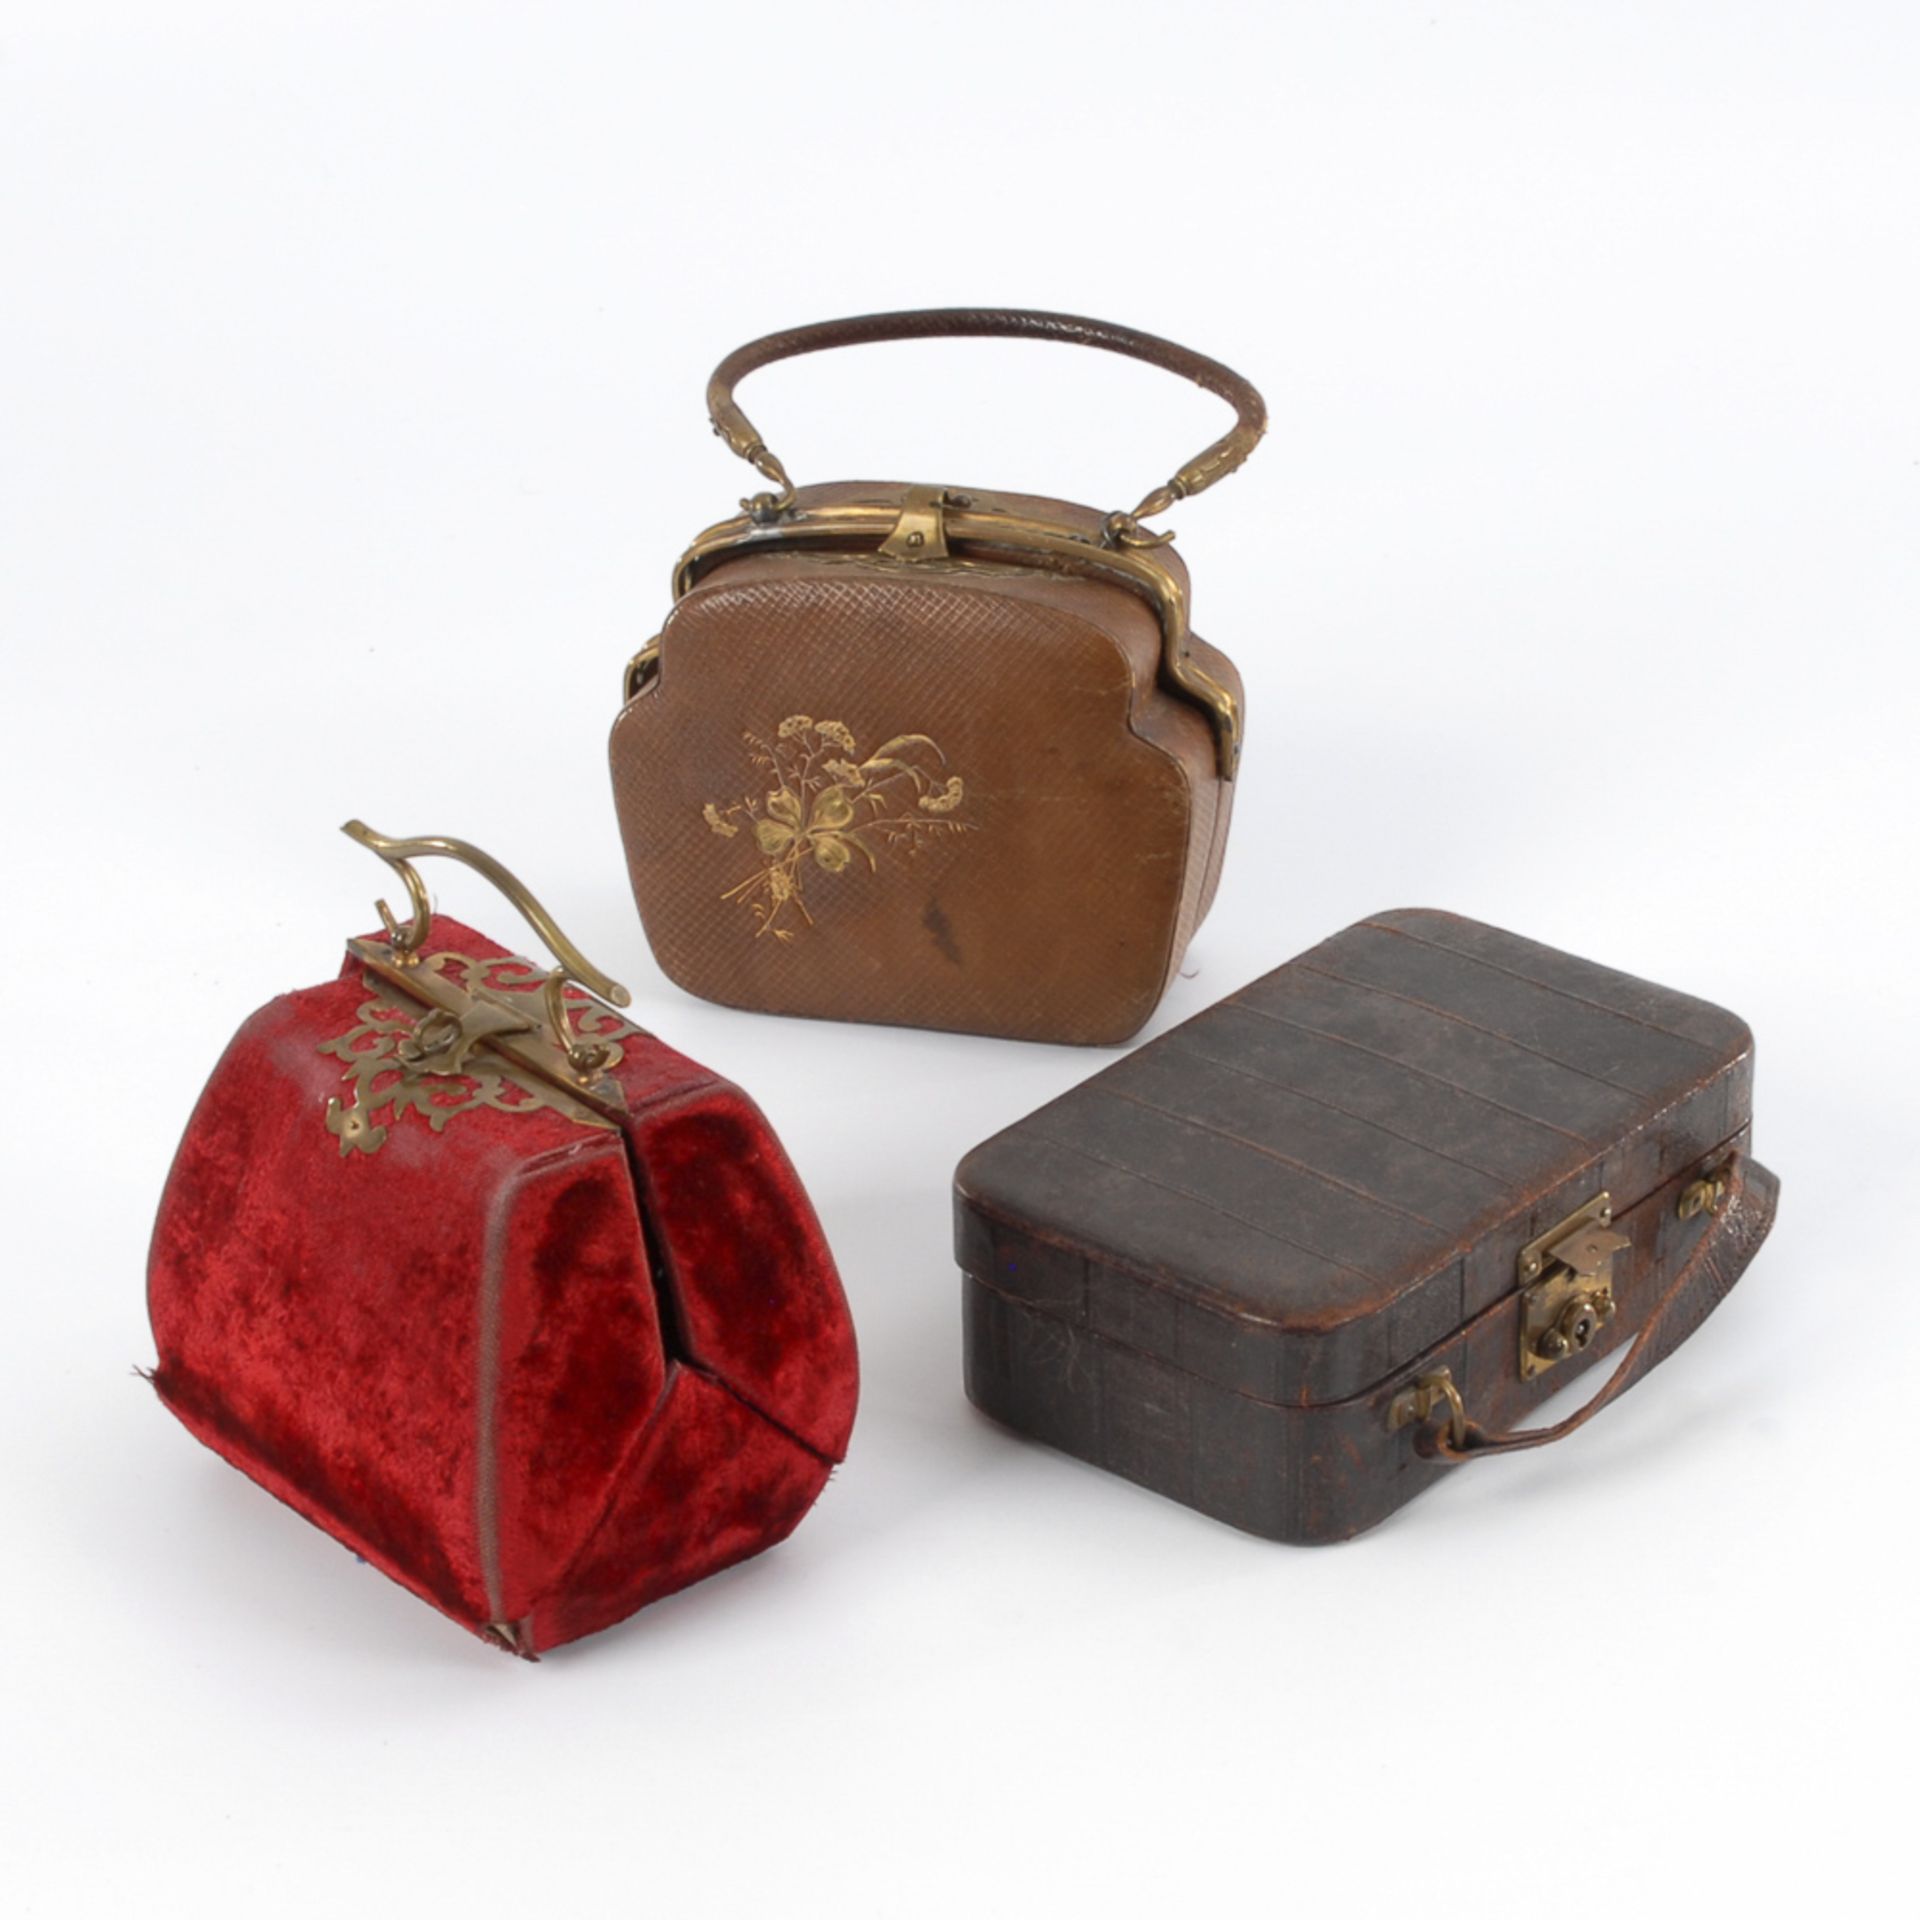 3 Teile Reisegepäck für die elegante Puppendame.Um 1900-20. Pappe, Leder, Samt. L 13-16 cm. Braune